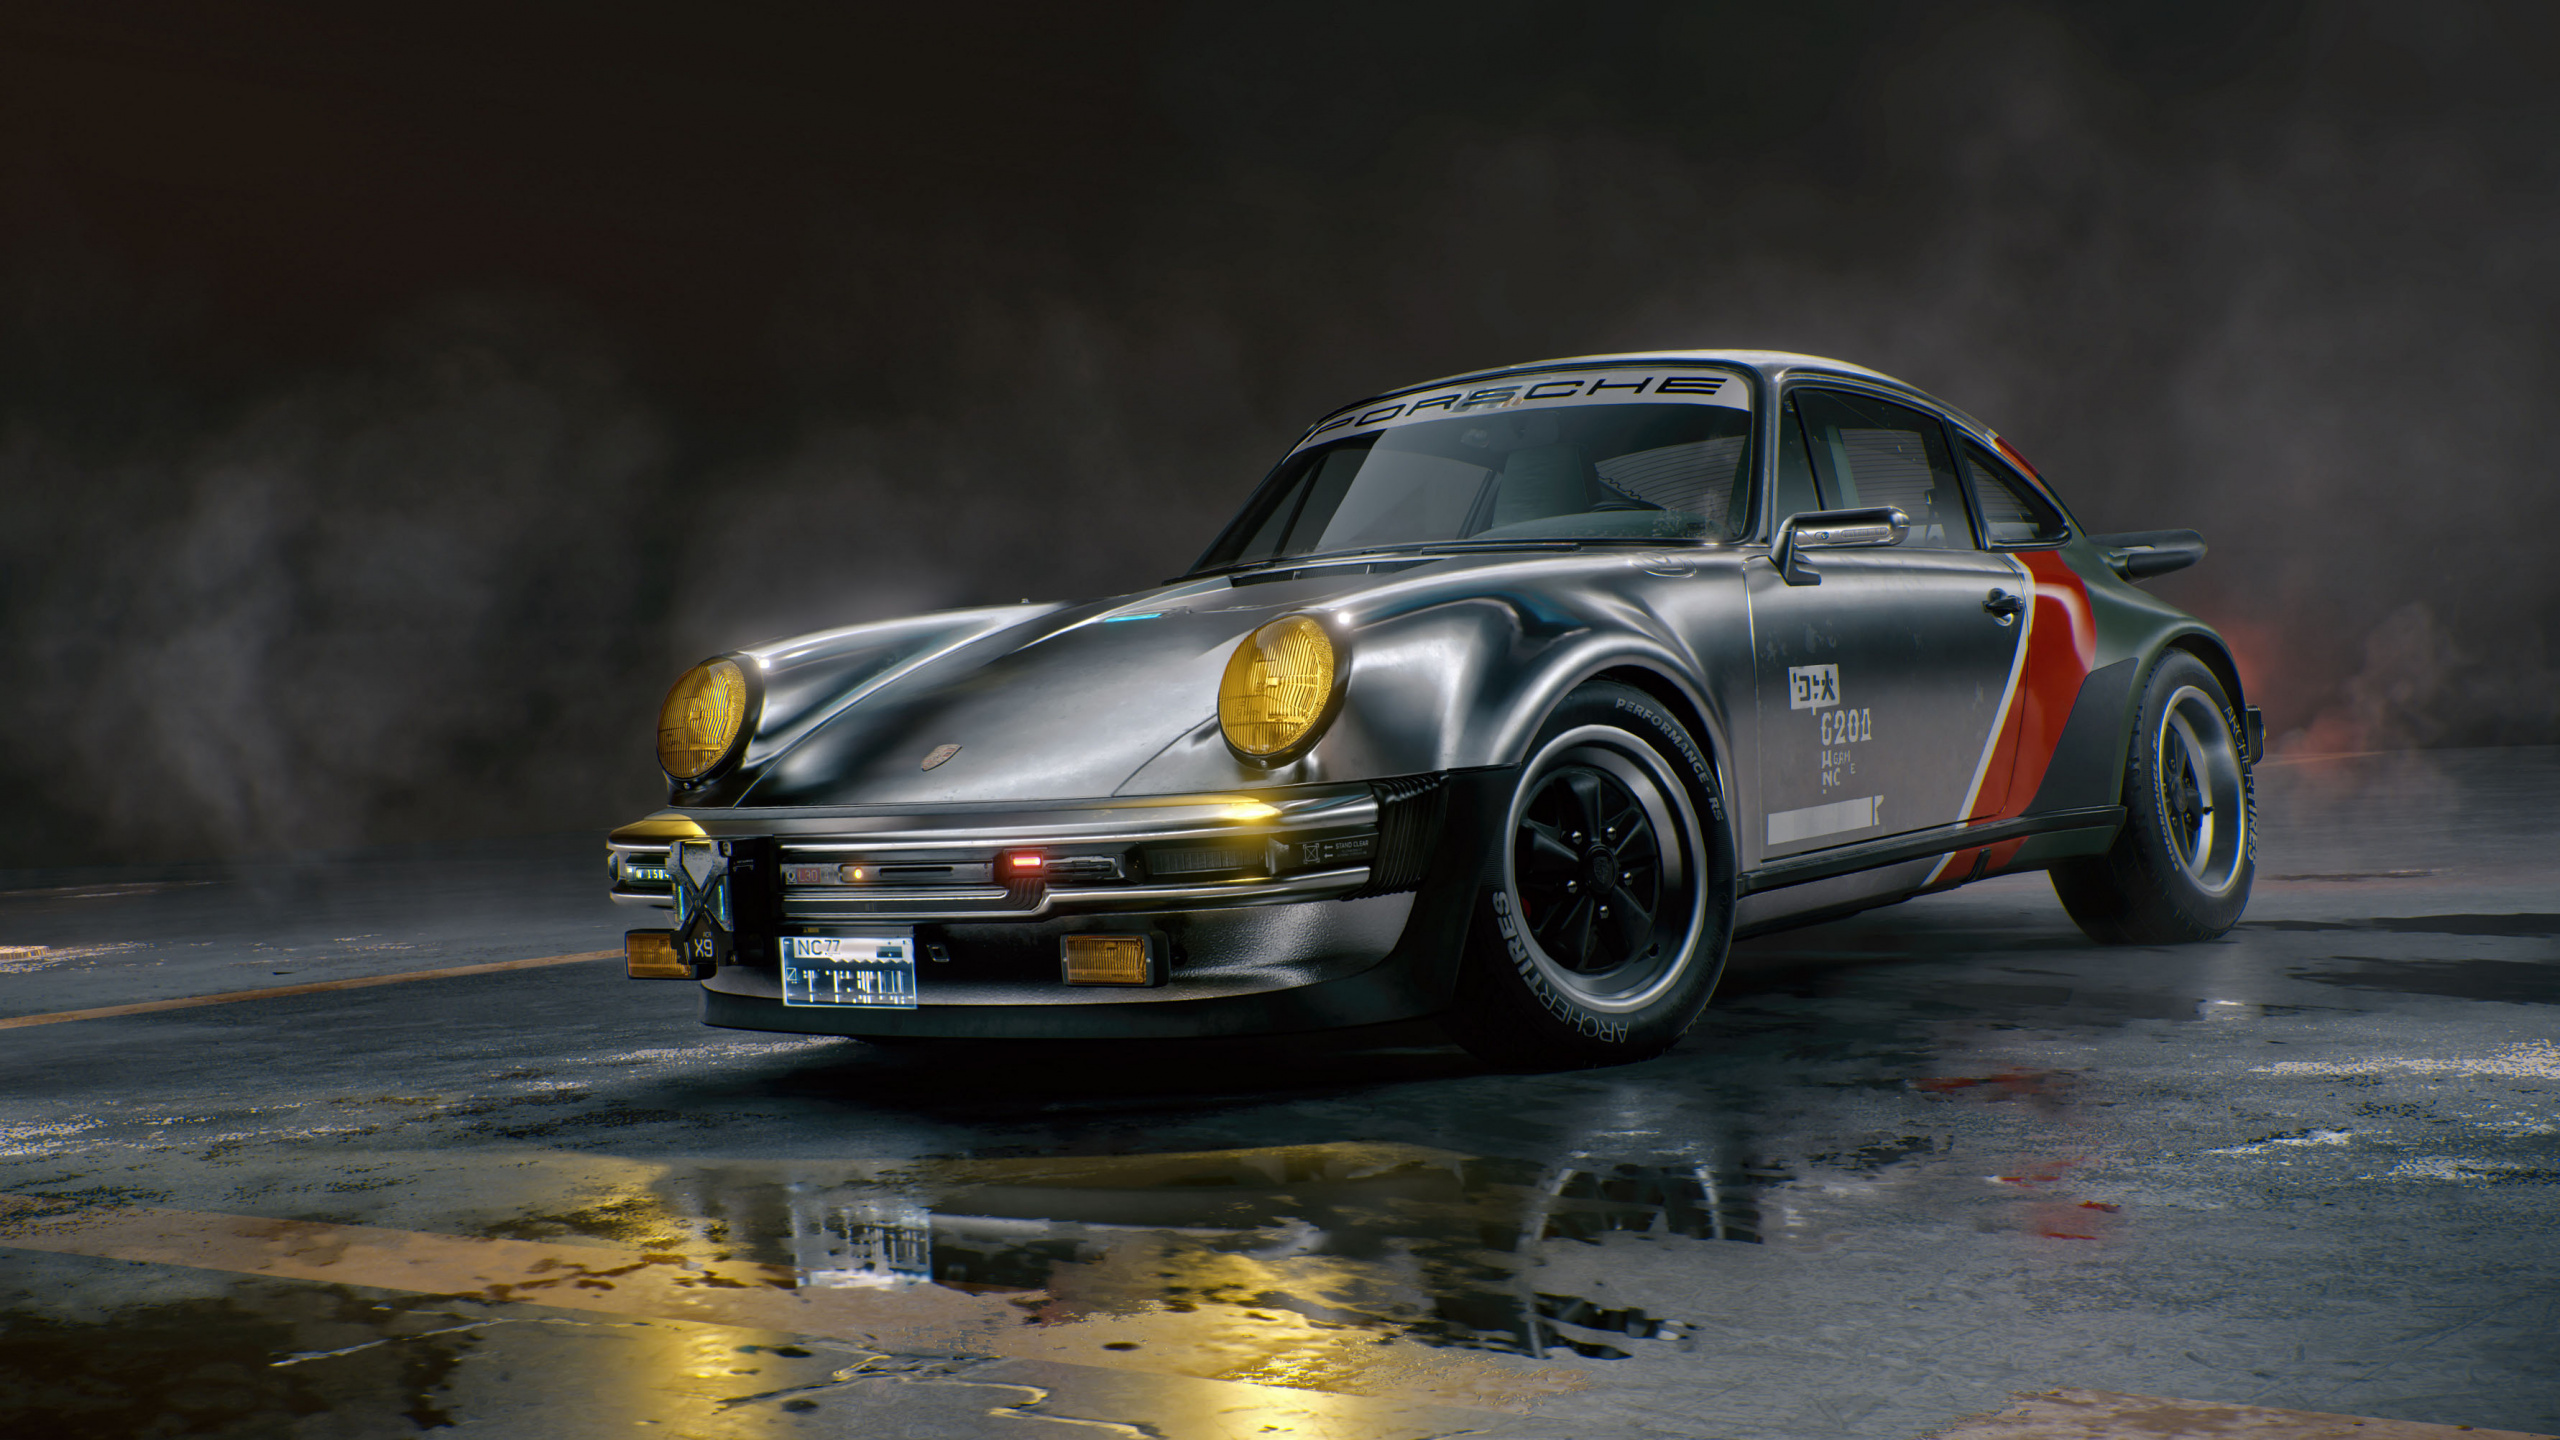 Porsche 911 Classic, Porsche 930, Porsche 911 Gt2, Porsche, Ruf CTR2. Wallpaper in 2560x1440 Resolution